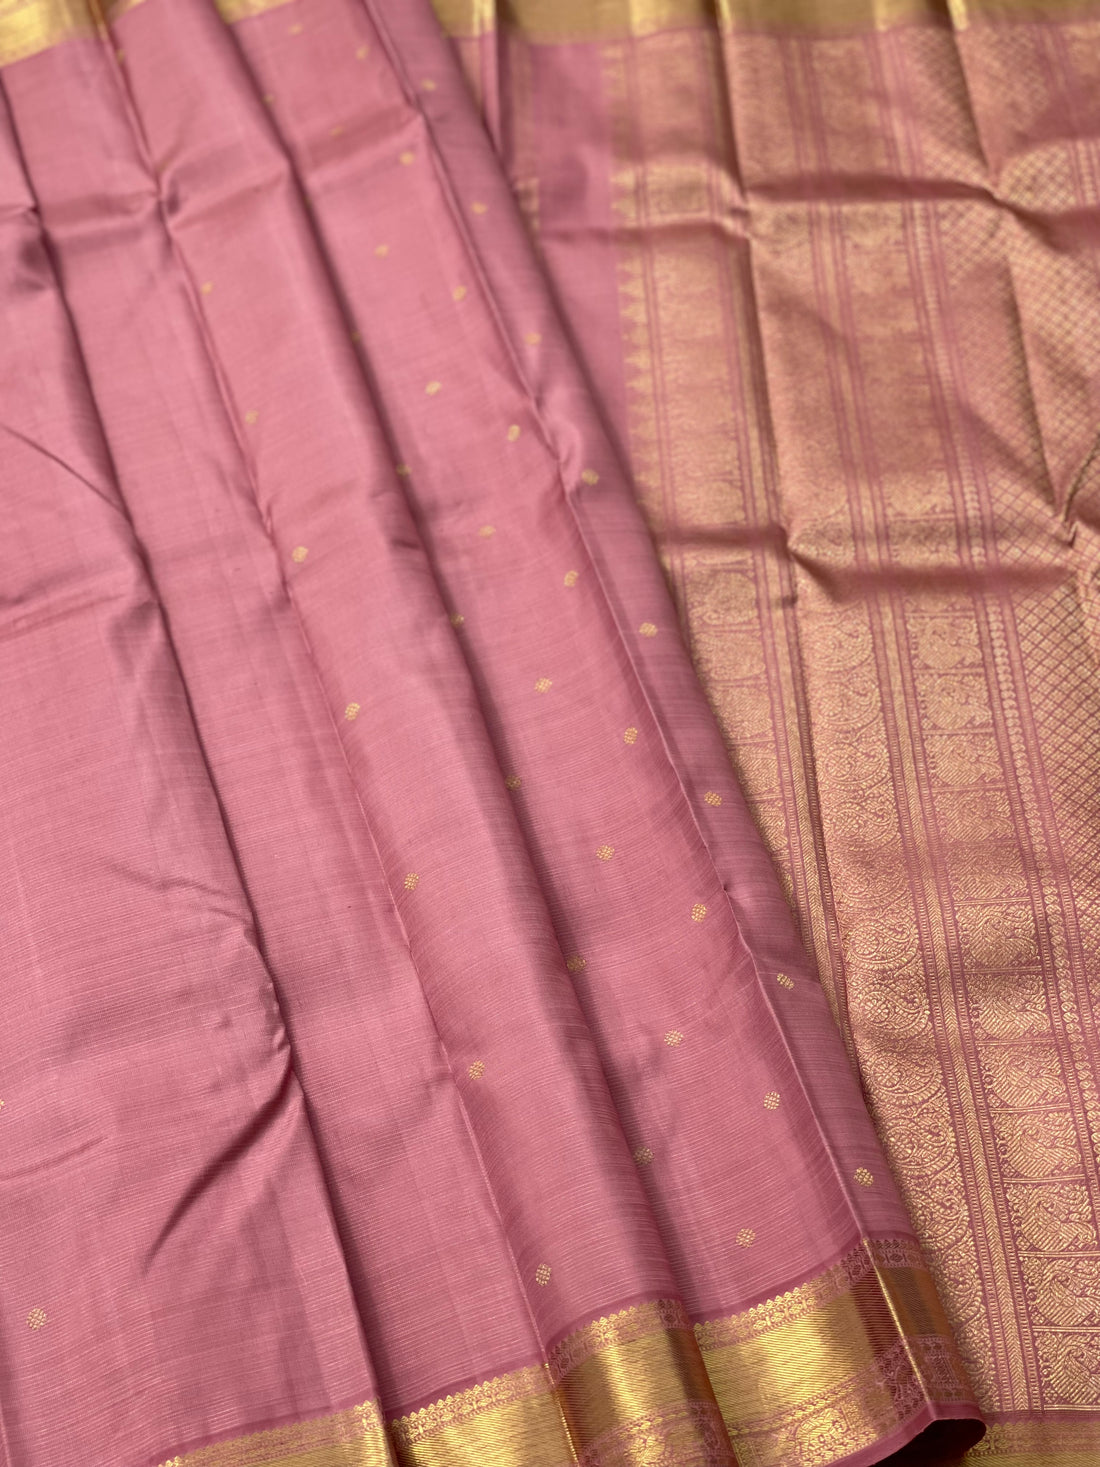 Heirloom vairaoosi kanchivaram silk saree in Dusty rose pink